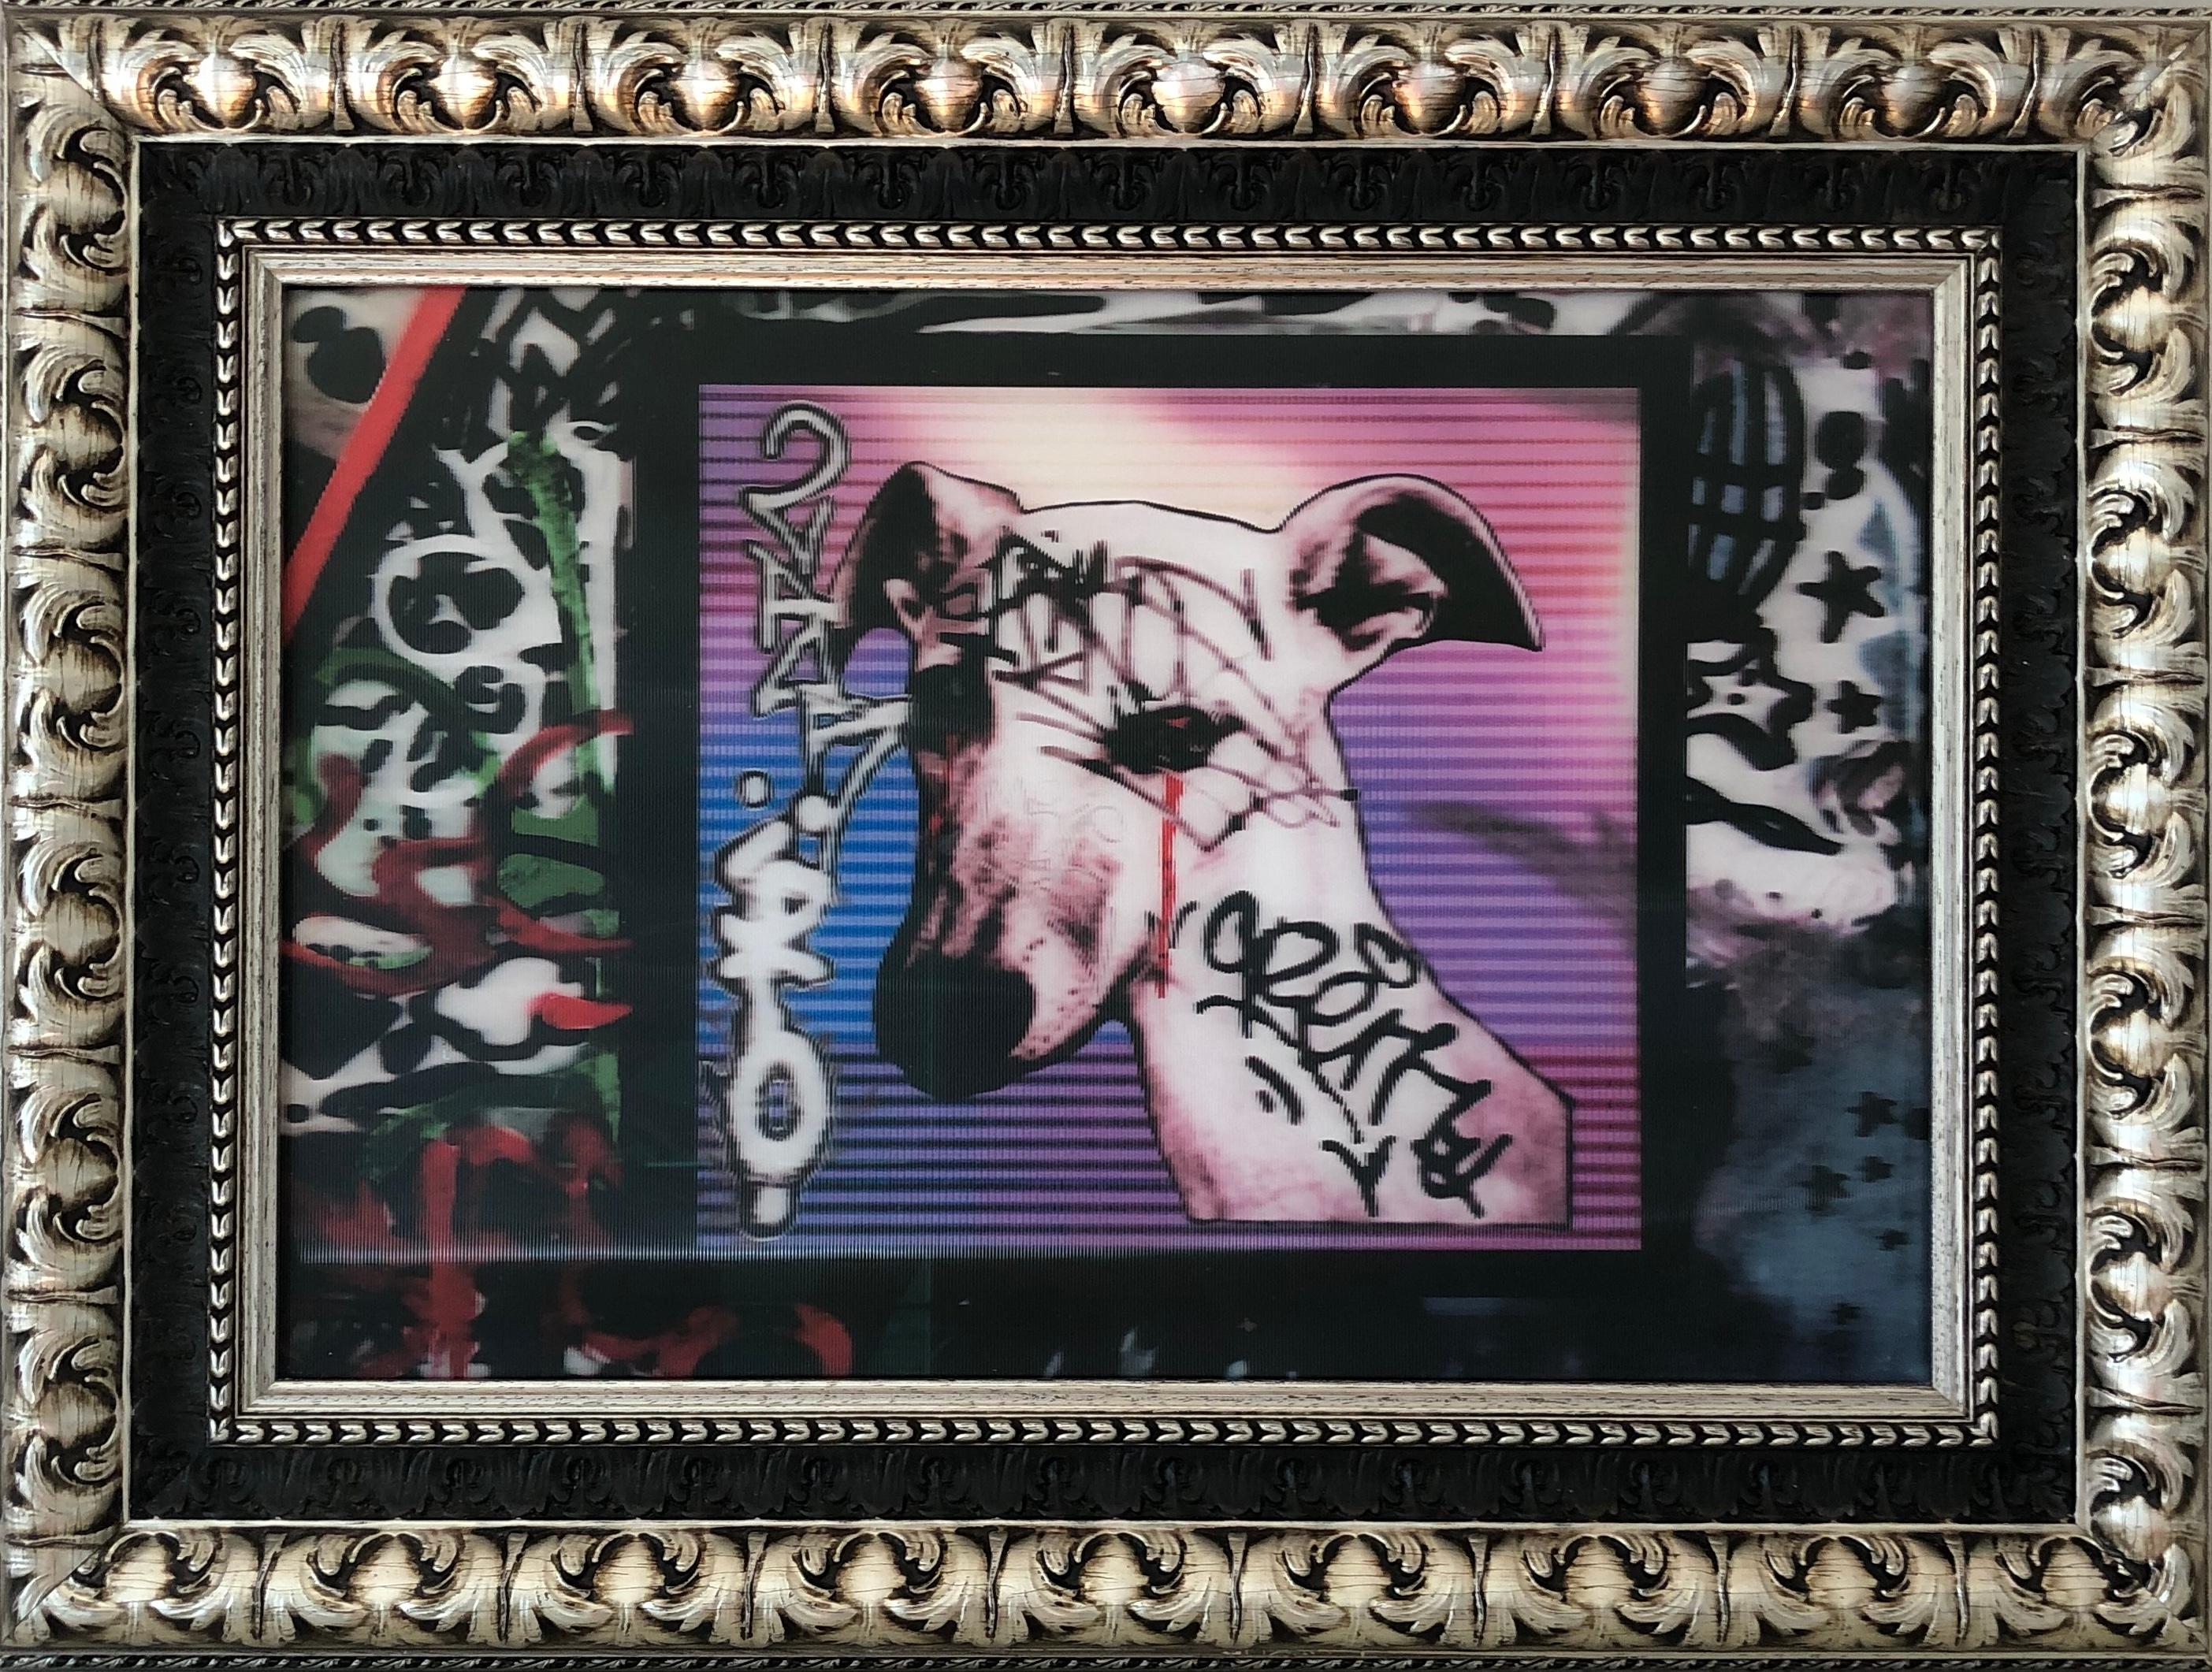 Das Lentikularfoto von Chien de les Frigos - Graffiti in Rosa, Rot, Weiß, Blau, Schwarz